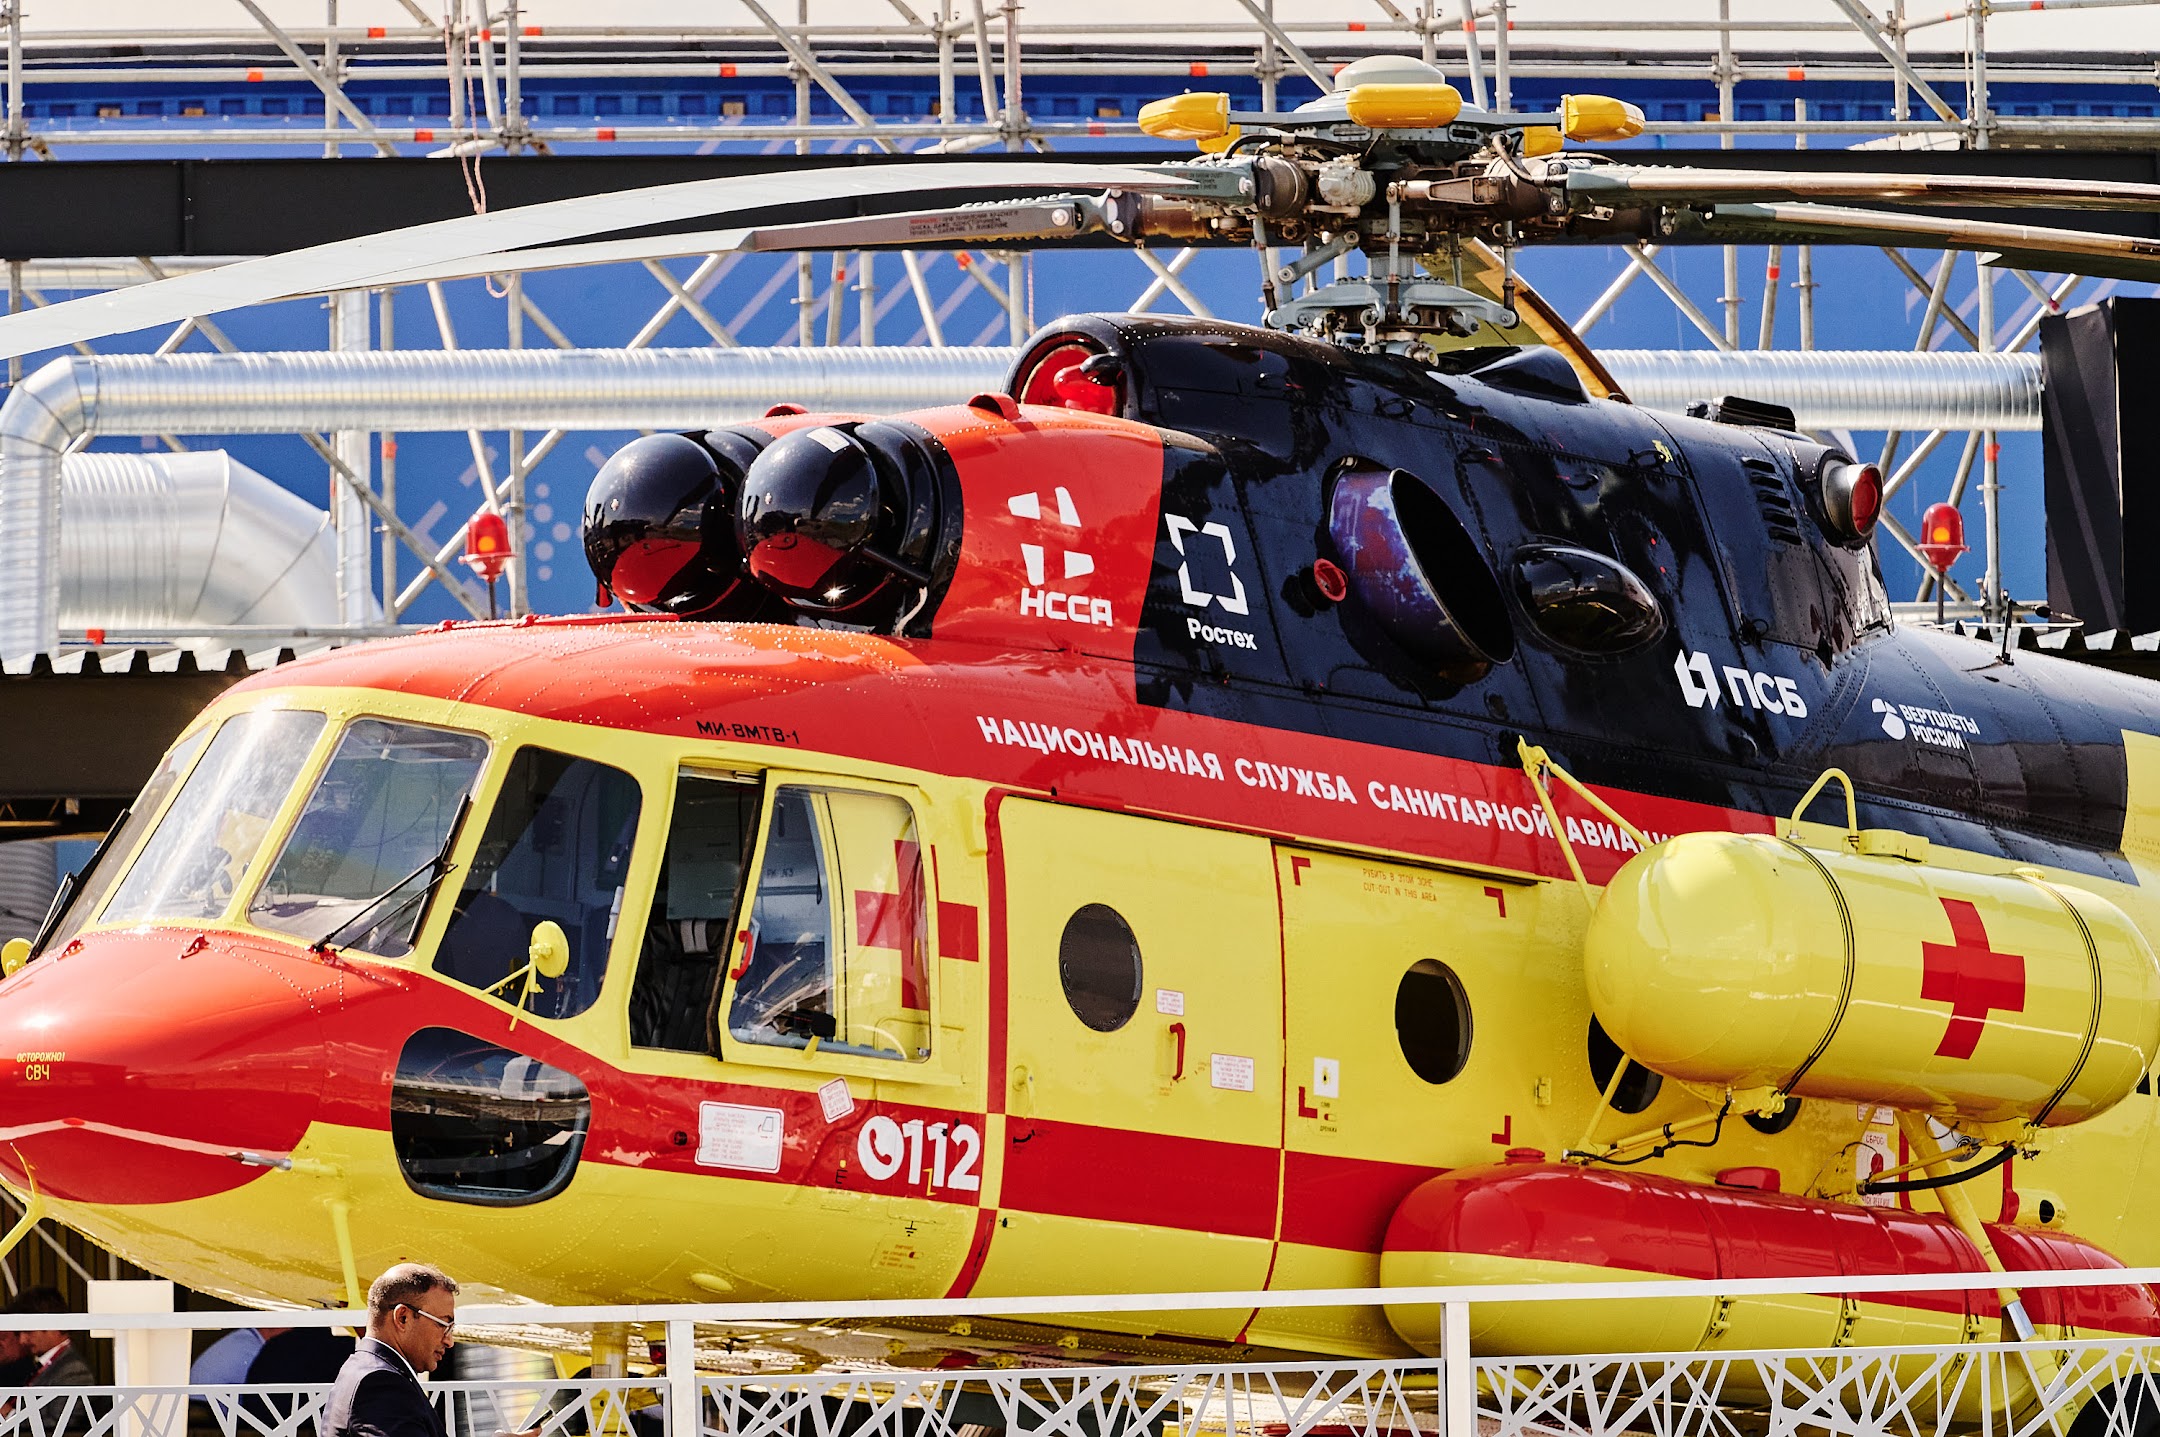 Парк Национальной службы санитарной авиации Ростеха пополнился пятью вертолетами